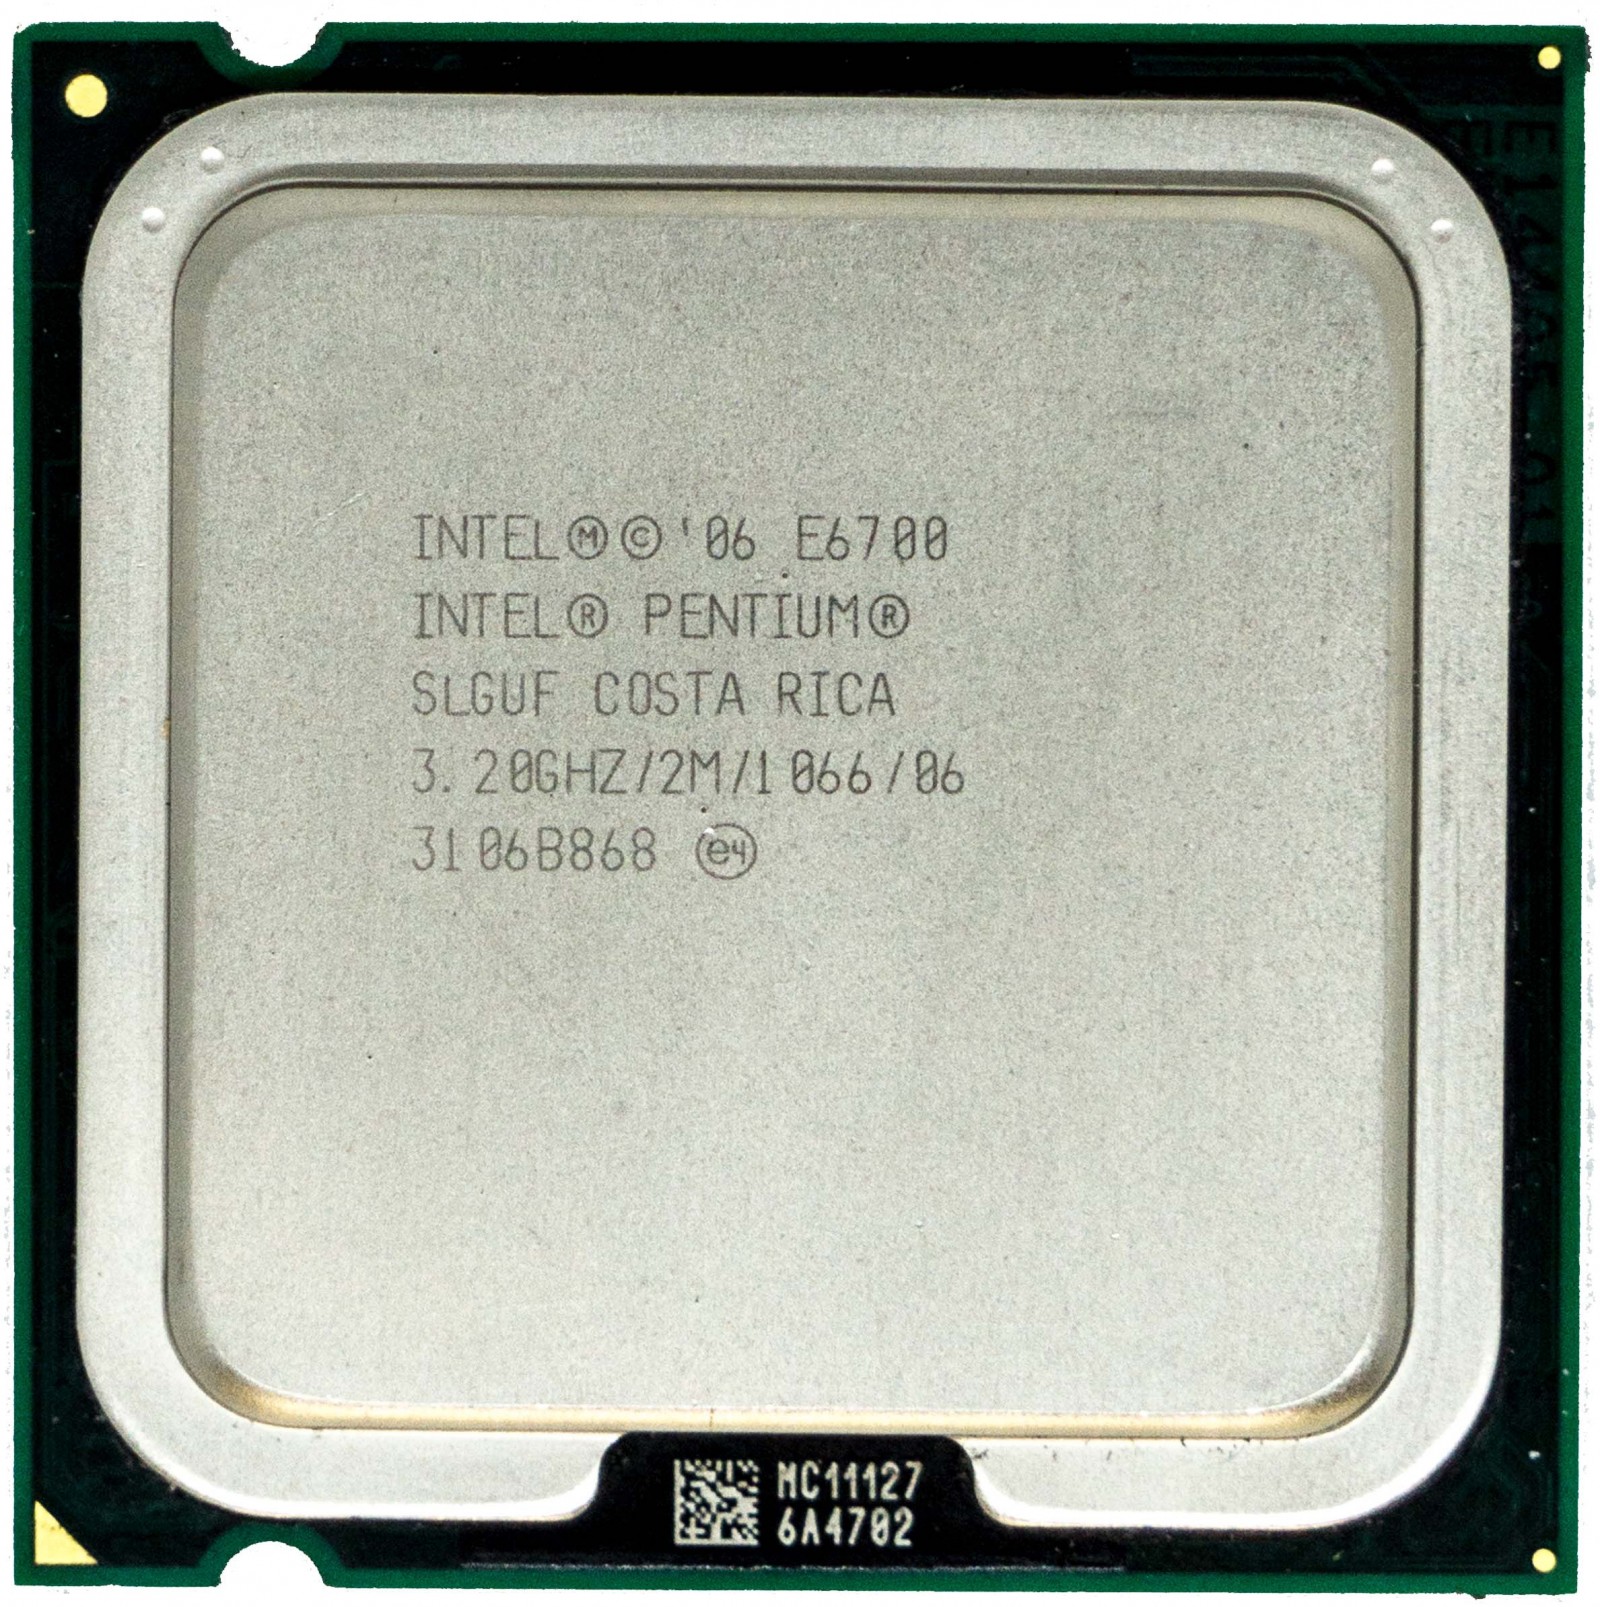 Куплю процессор б у. Xeon x3230. Процессор Intel e6700. Intel Pentium e5800 3.20 GHZ. Intel Pentium SLGUF Costa Rica 3.2 характеристики.